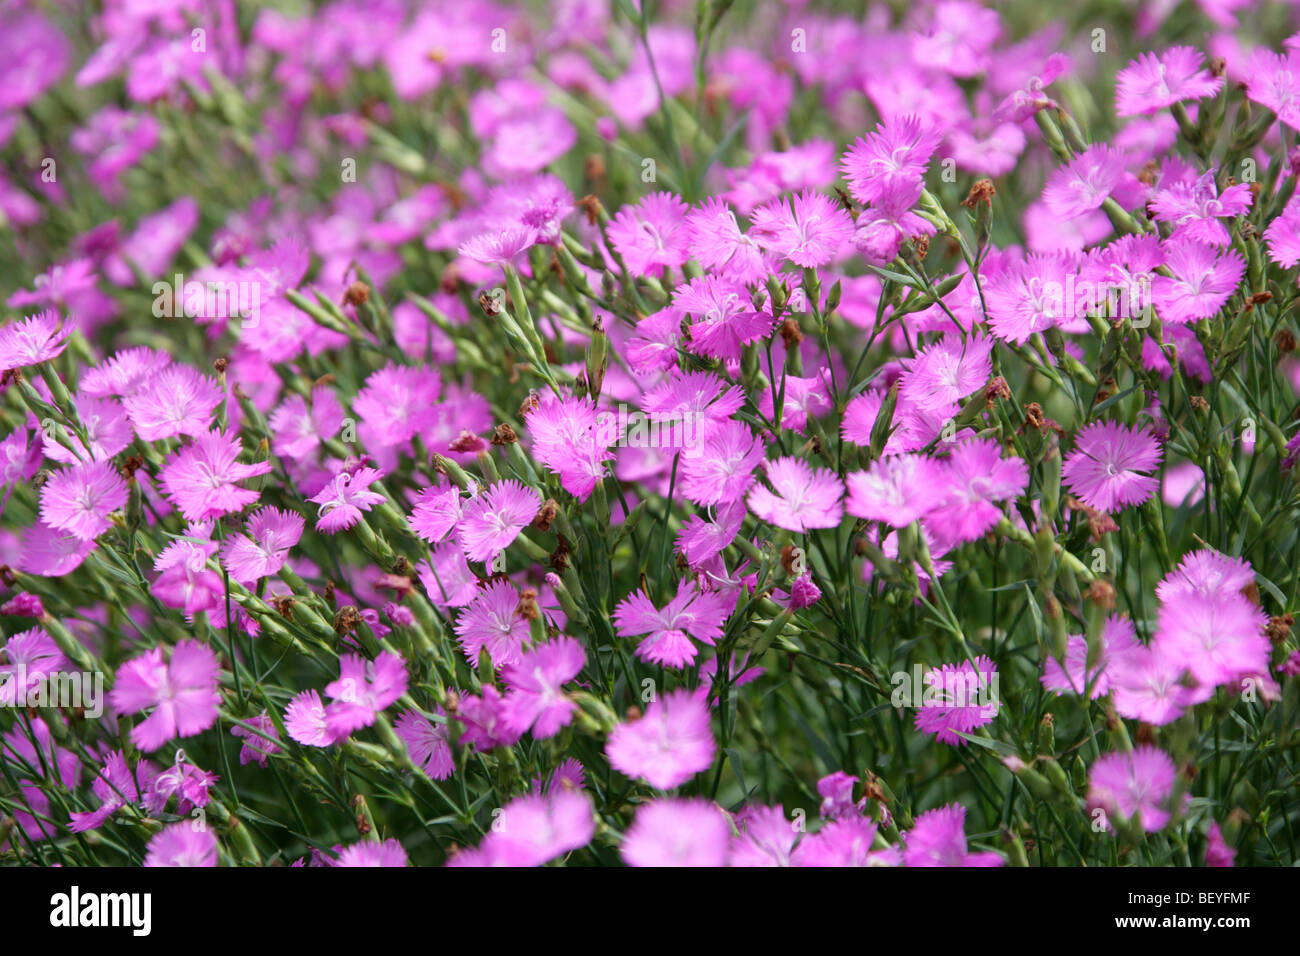 Rosa o Sequier irregulares de color rosa, Dianthus seguieri, Caryophyllaceae, al suroeste de Europa, Asia templada Foto de stock